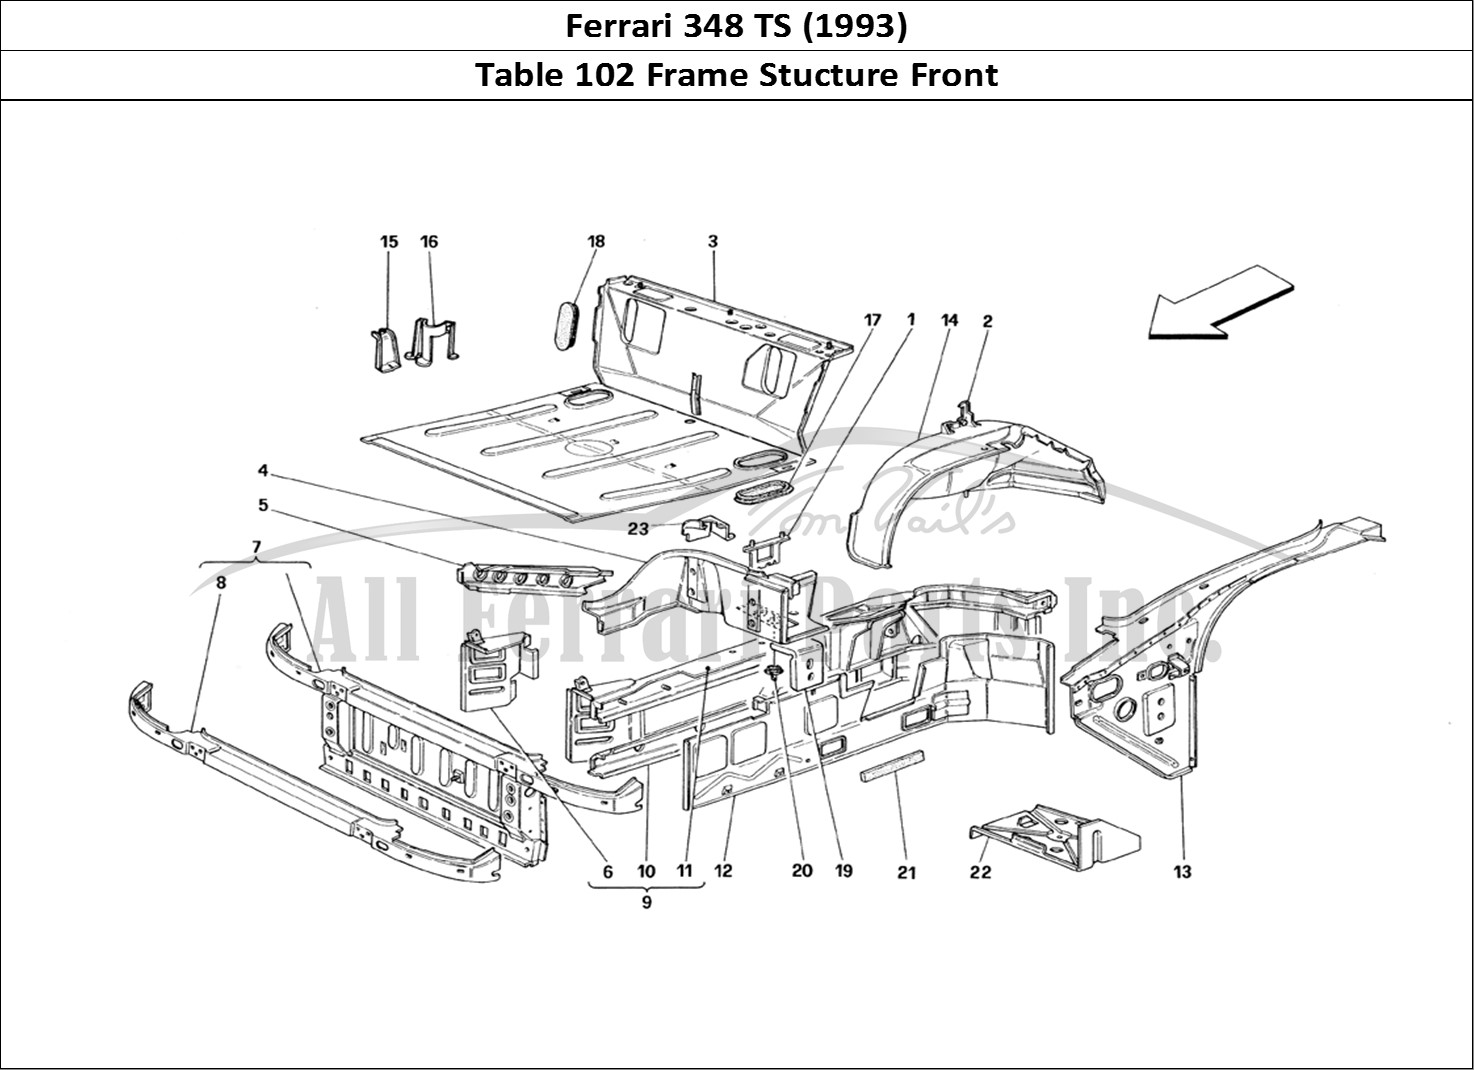 Ferrari Parts Ferrari 348 TB (1993) Page 102 Front Part Structures